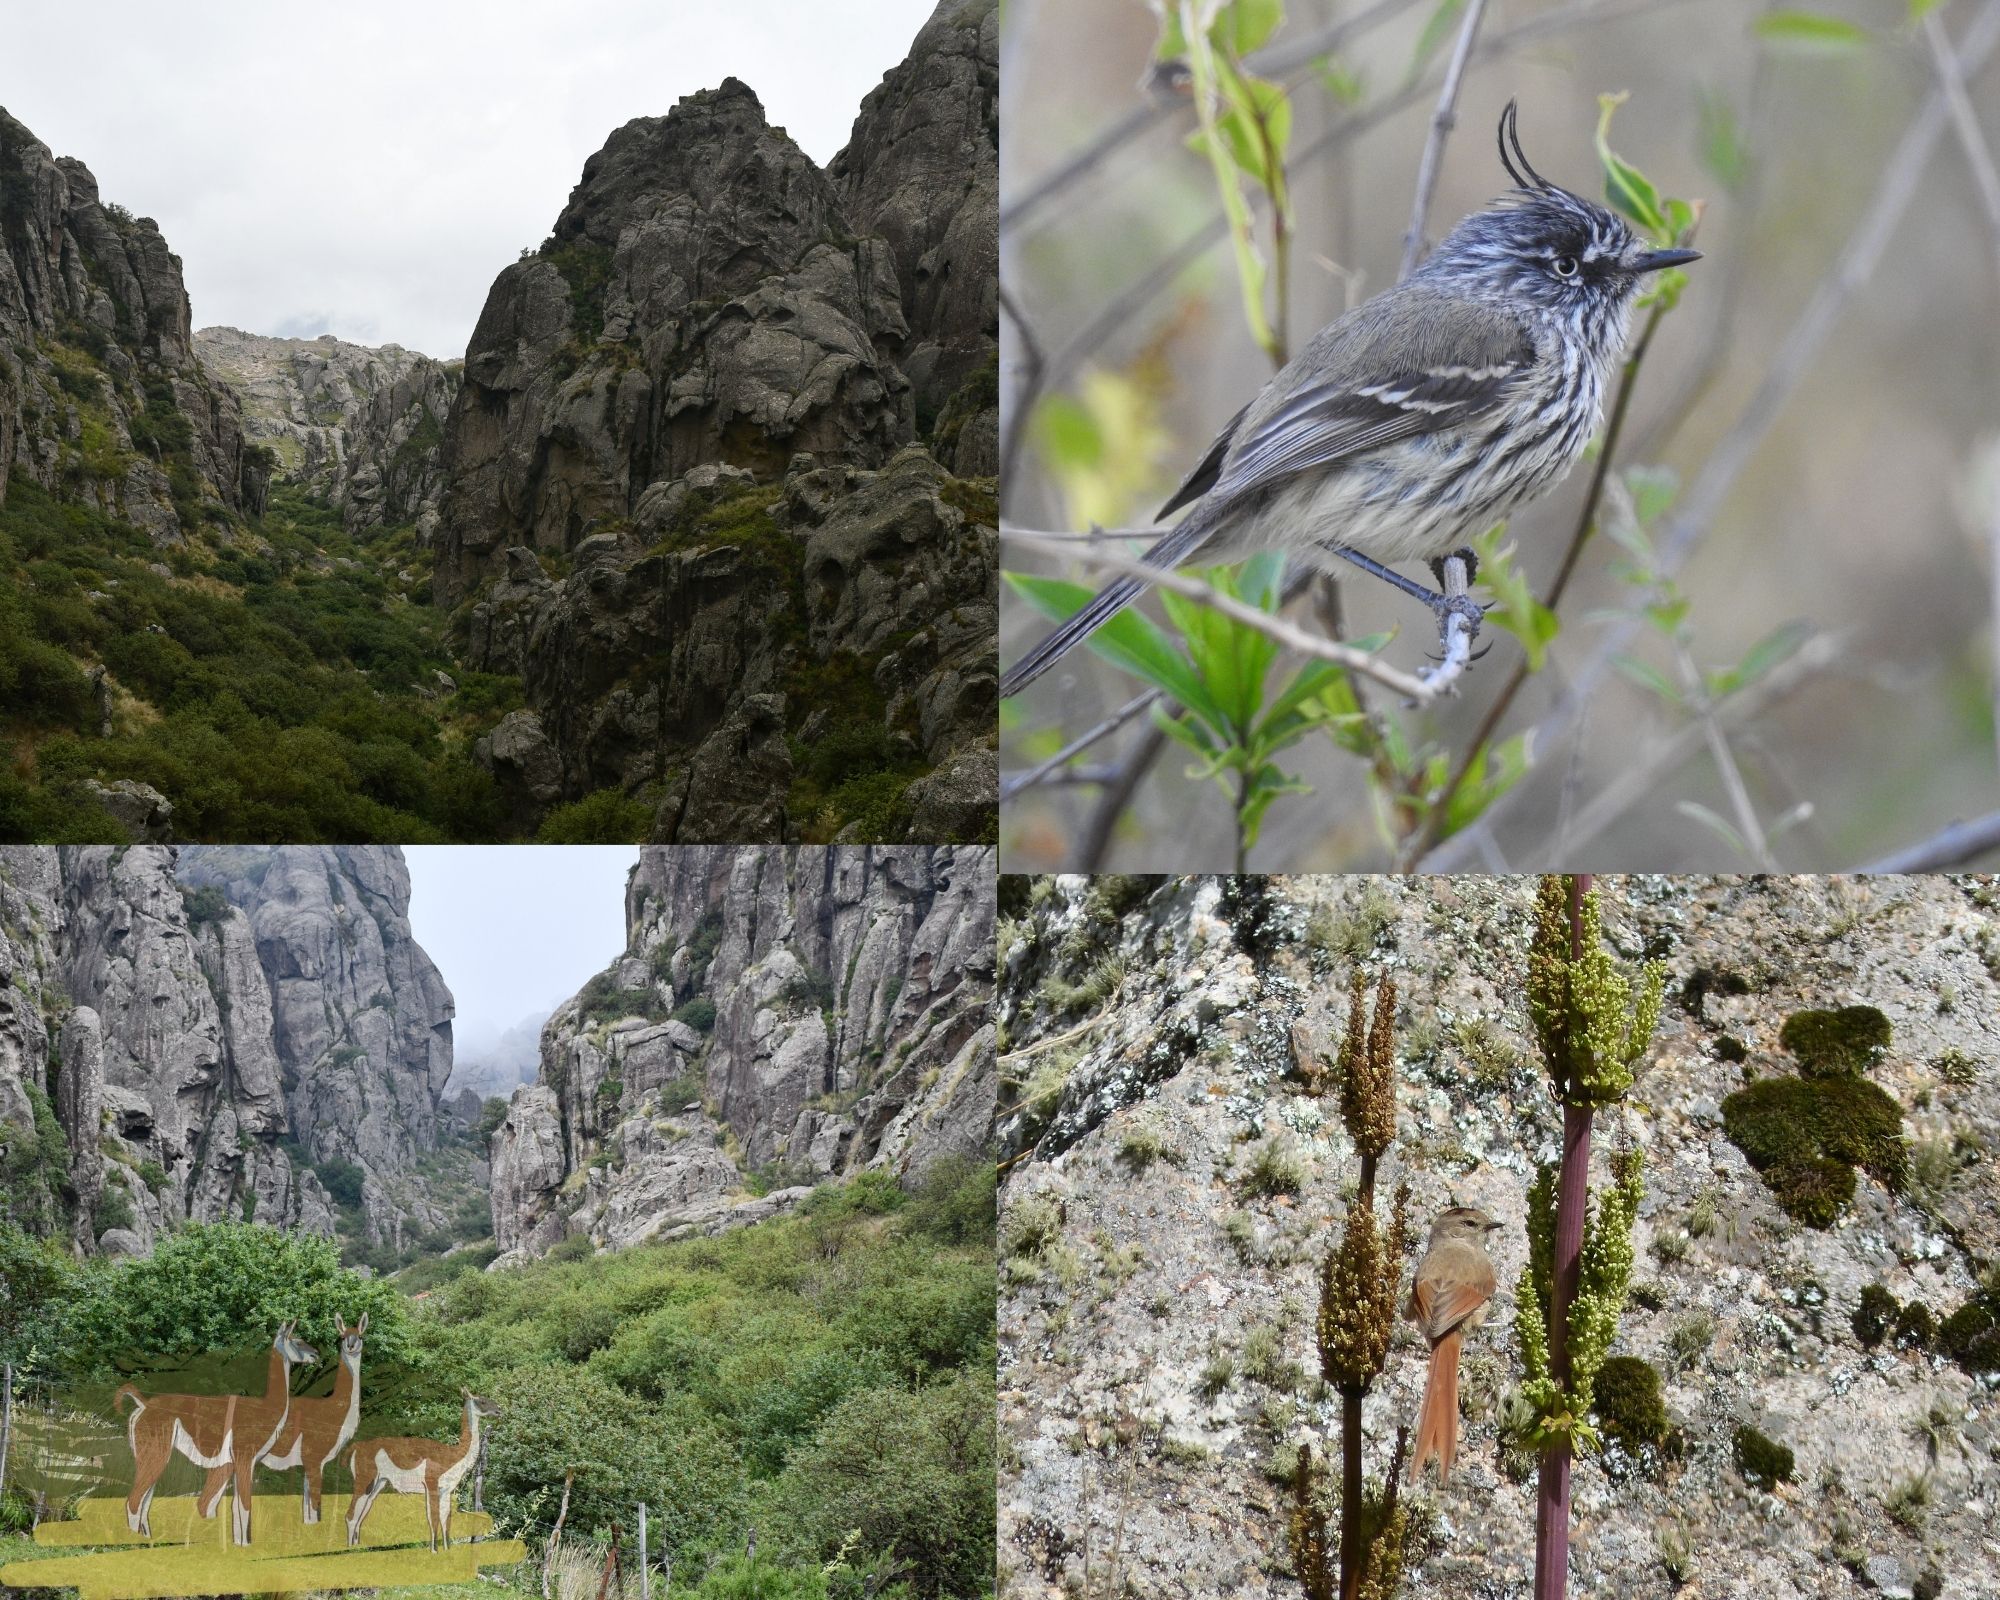 Respuestas de la avifauna luego de dos décadas de restauración de un bosque de Tabaquillos (Polylepis australis) en el centro de Argentina